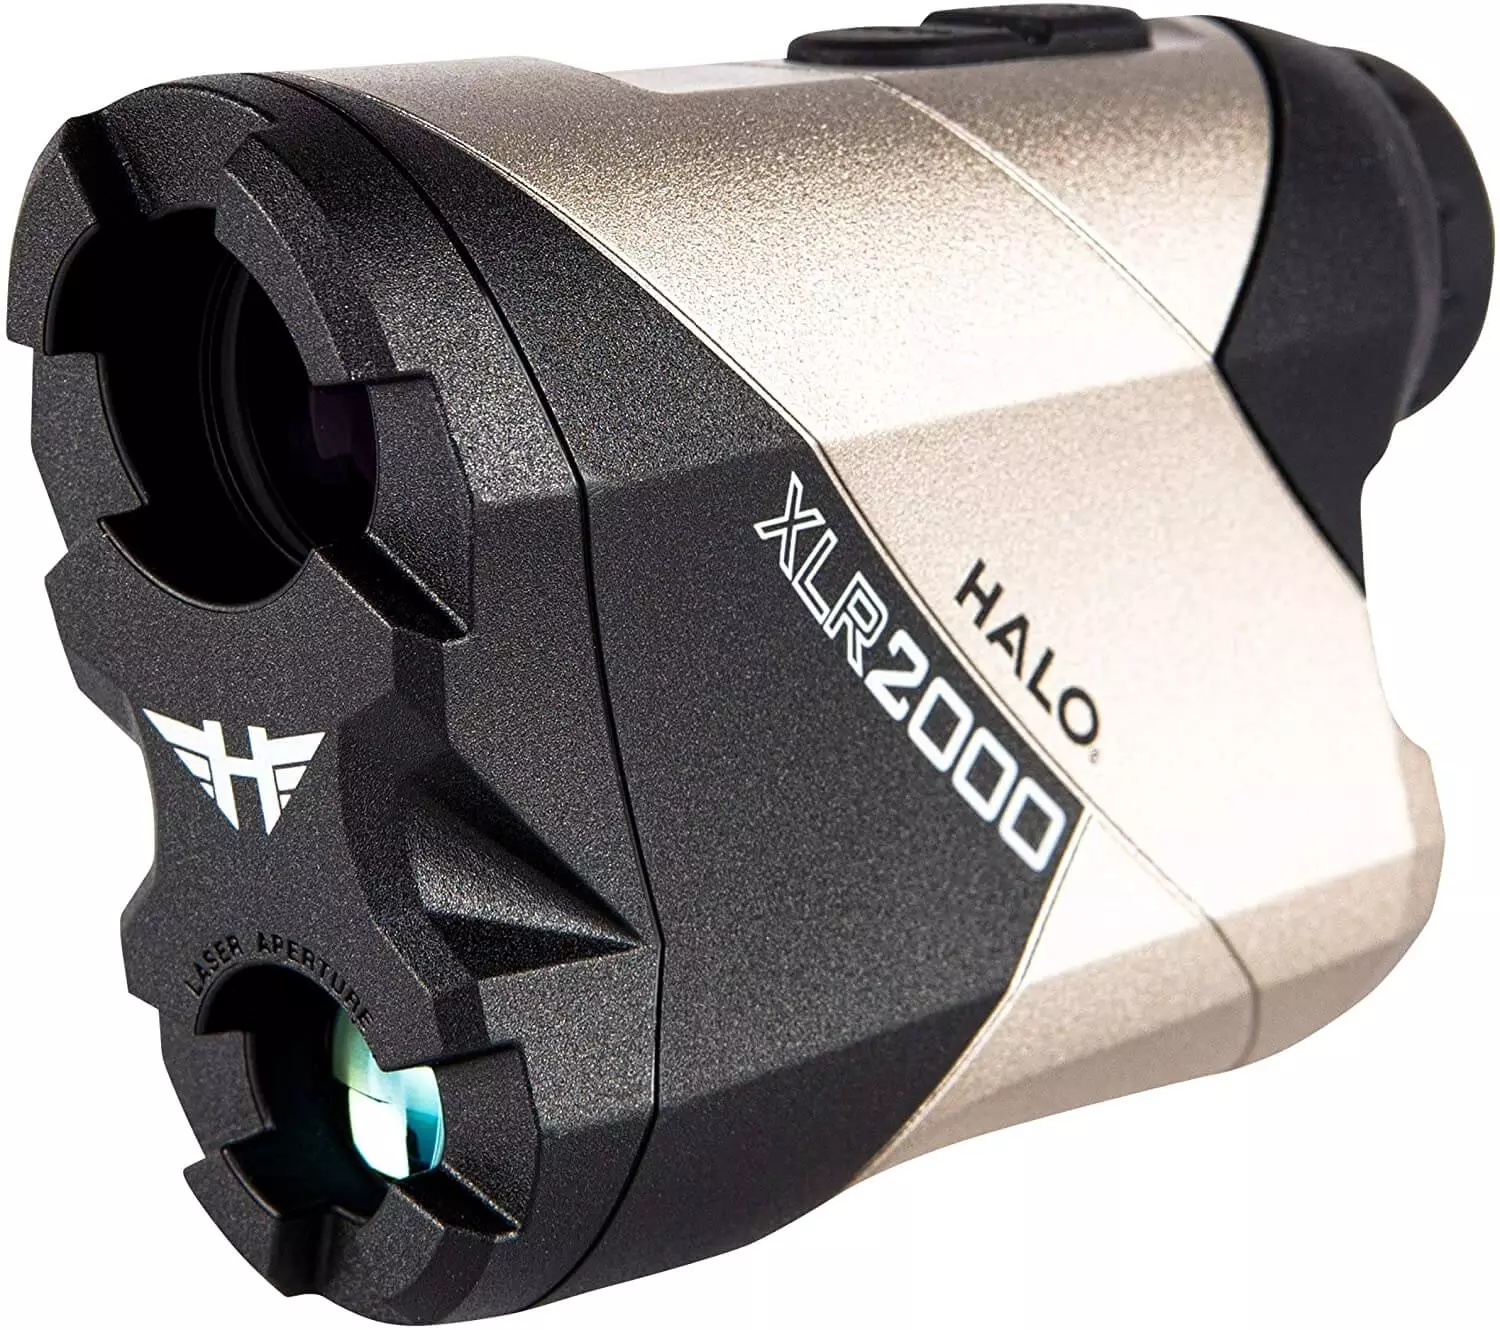 Halo Laser XLR 2000 – Best Shooting Rangefinder